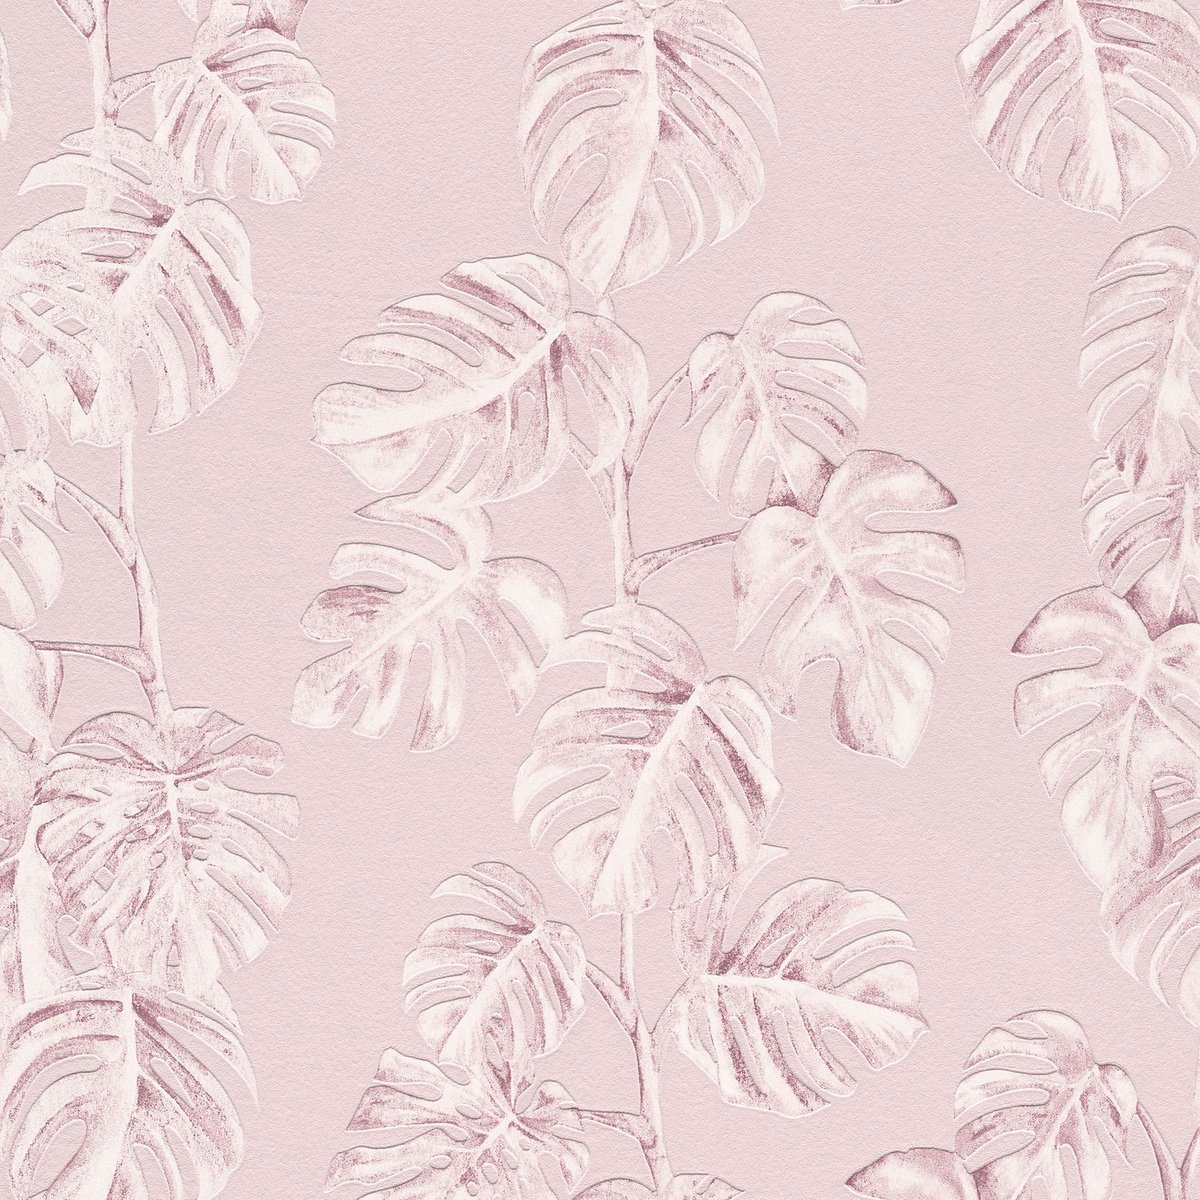 Natuur behang Profhome 372811-GU vliesbehang licht gestructureerd met palmen mat roze wit 5,33 m2